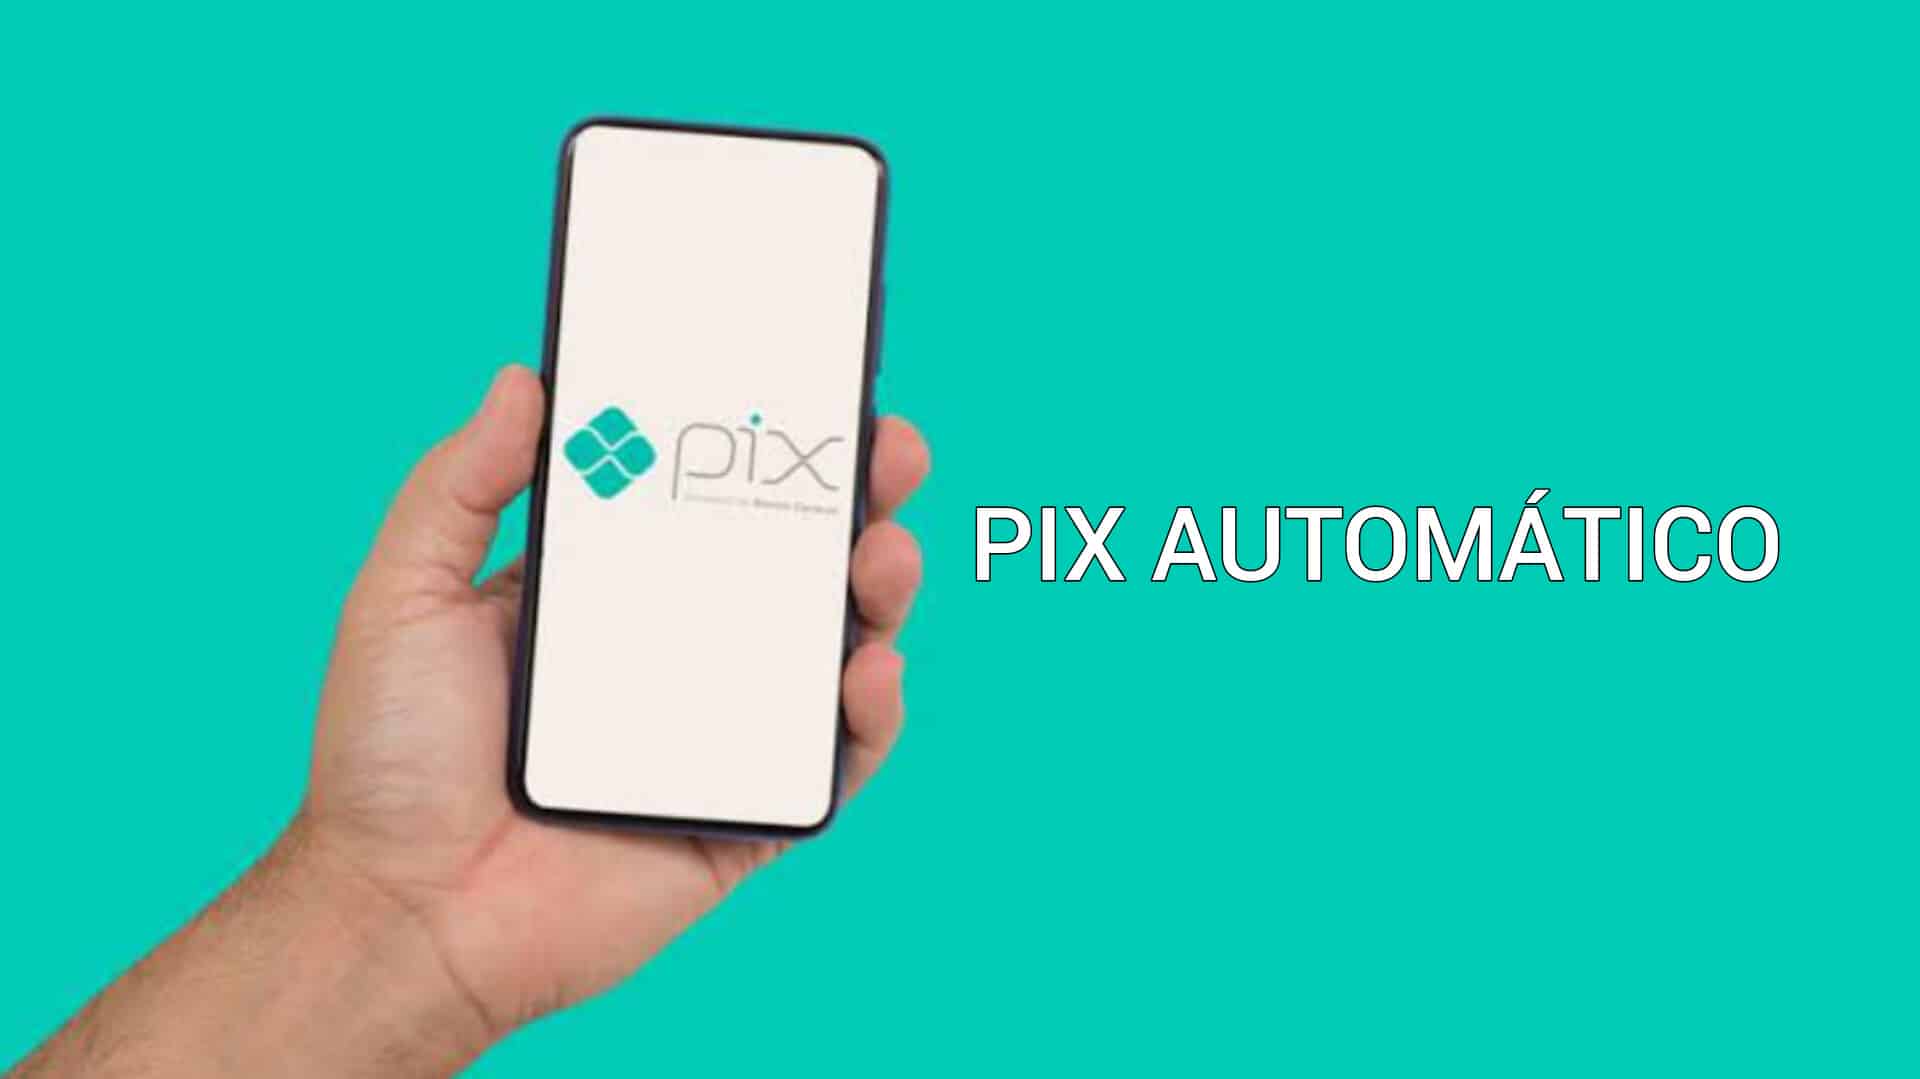 Pix Automático O que é, como funciona e quando chega